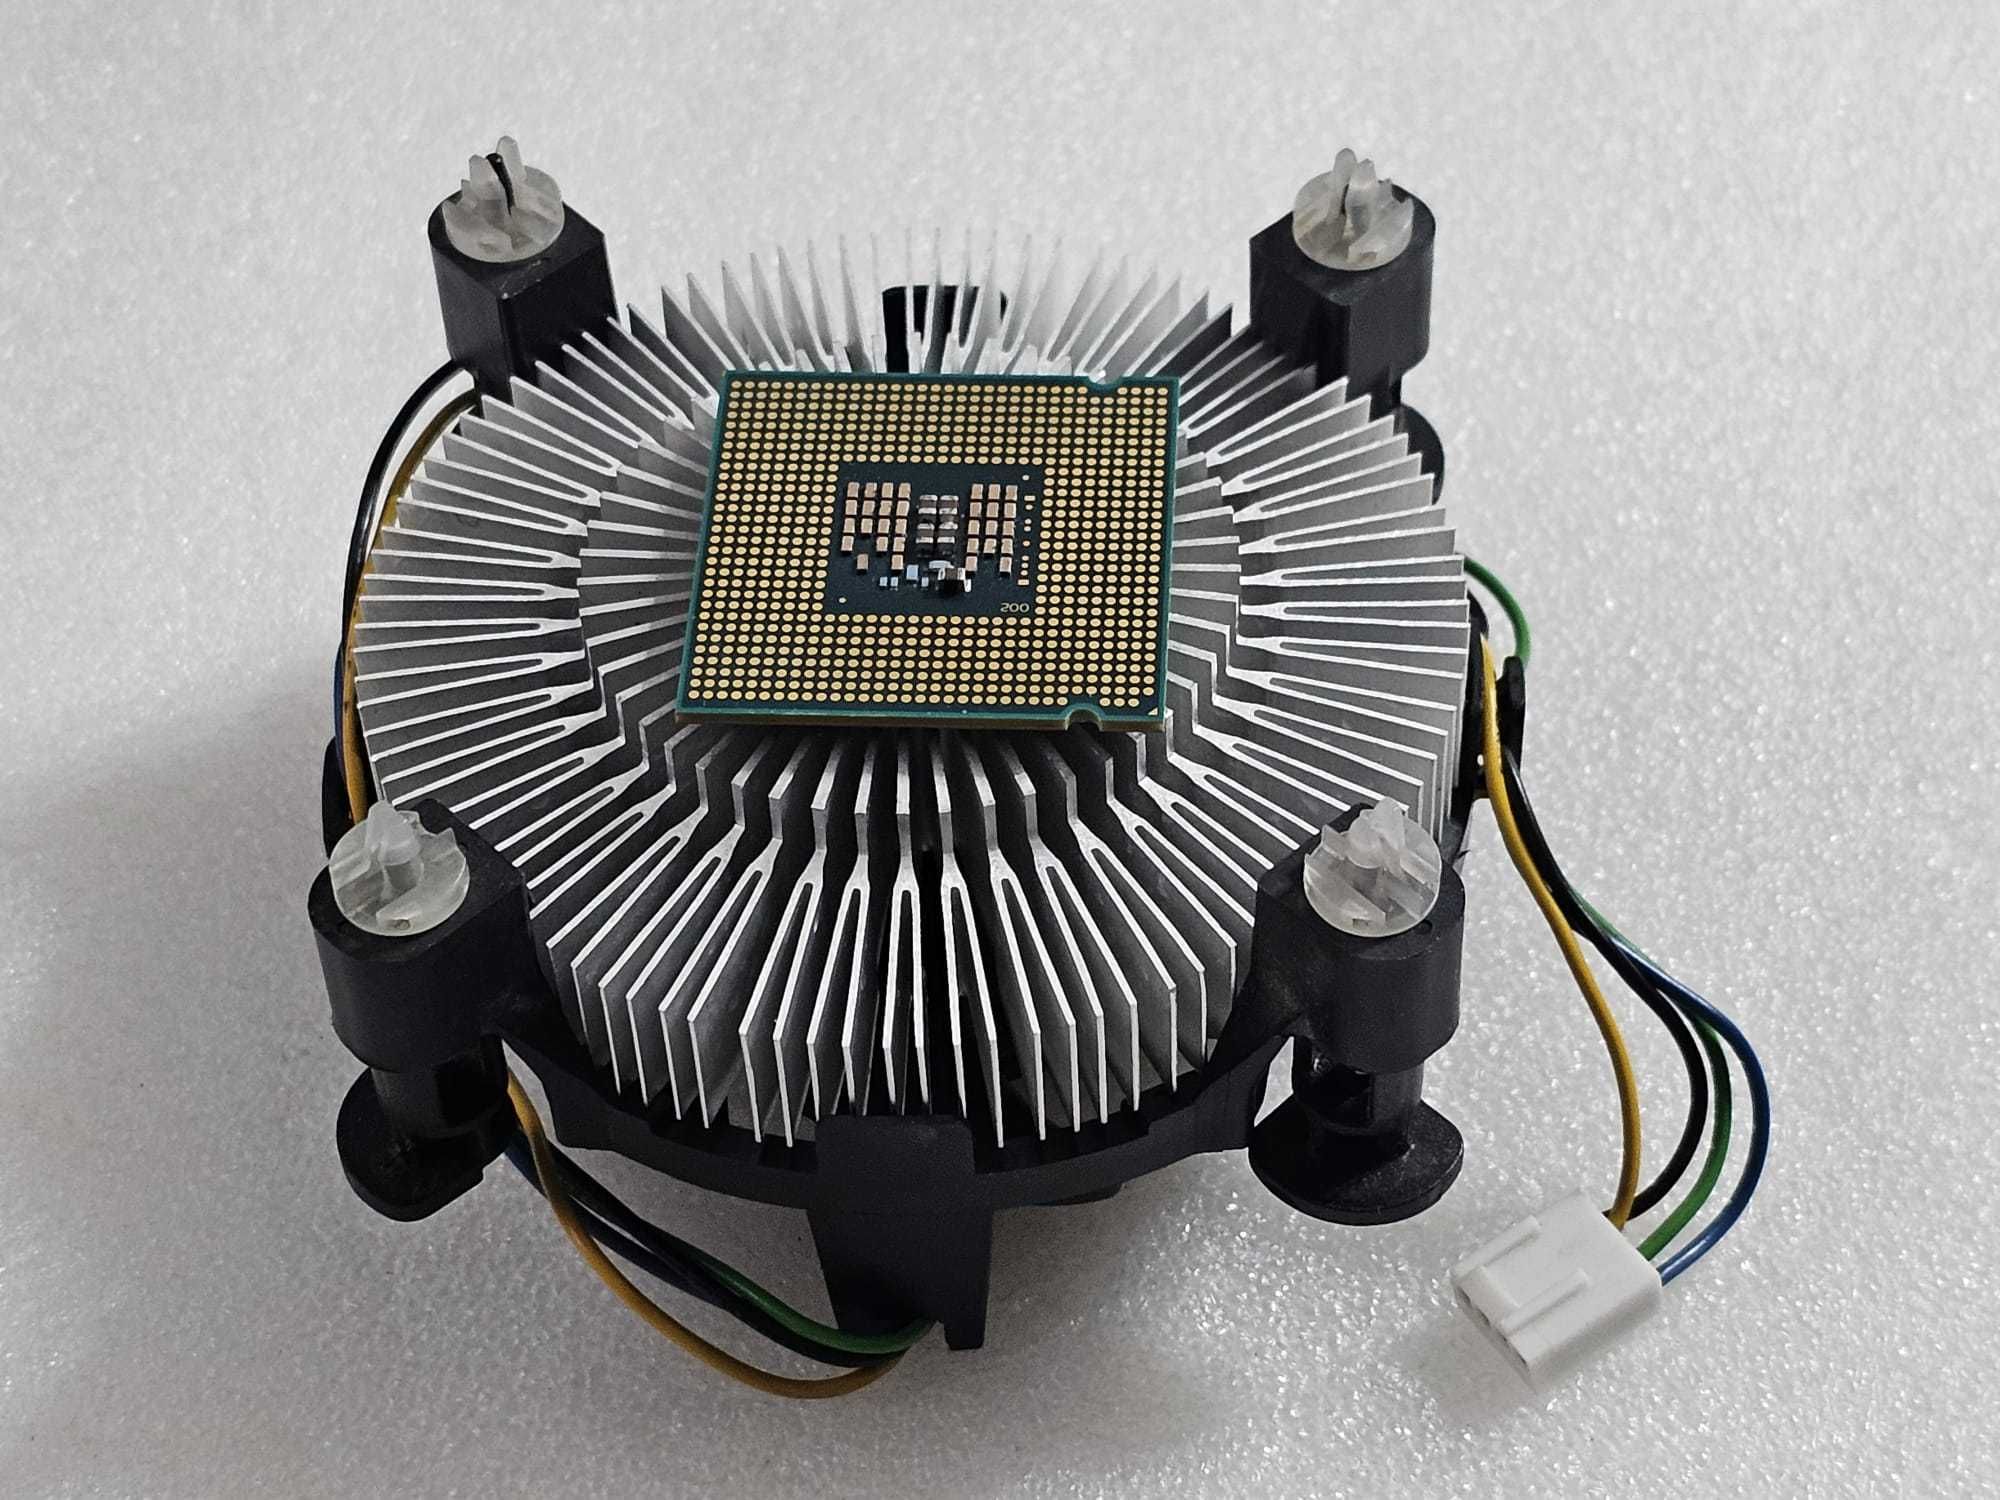 Procesor Intel Core 2 Quad Q8300 2.5GHz, socket LGA775 + cooler INTEL